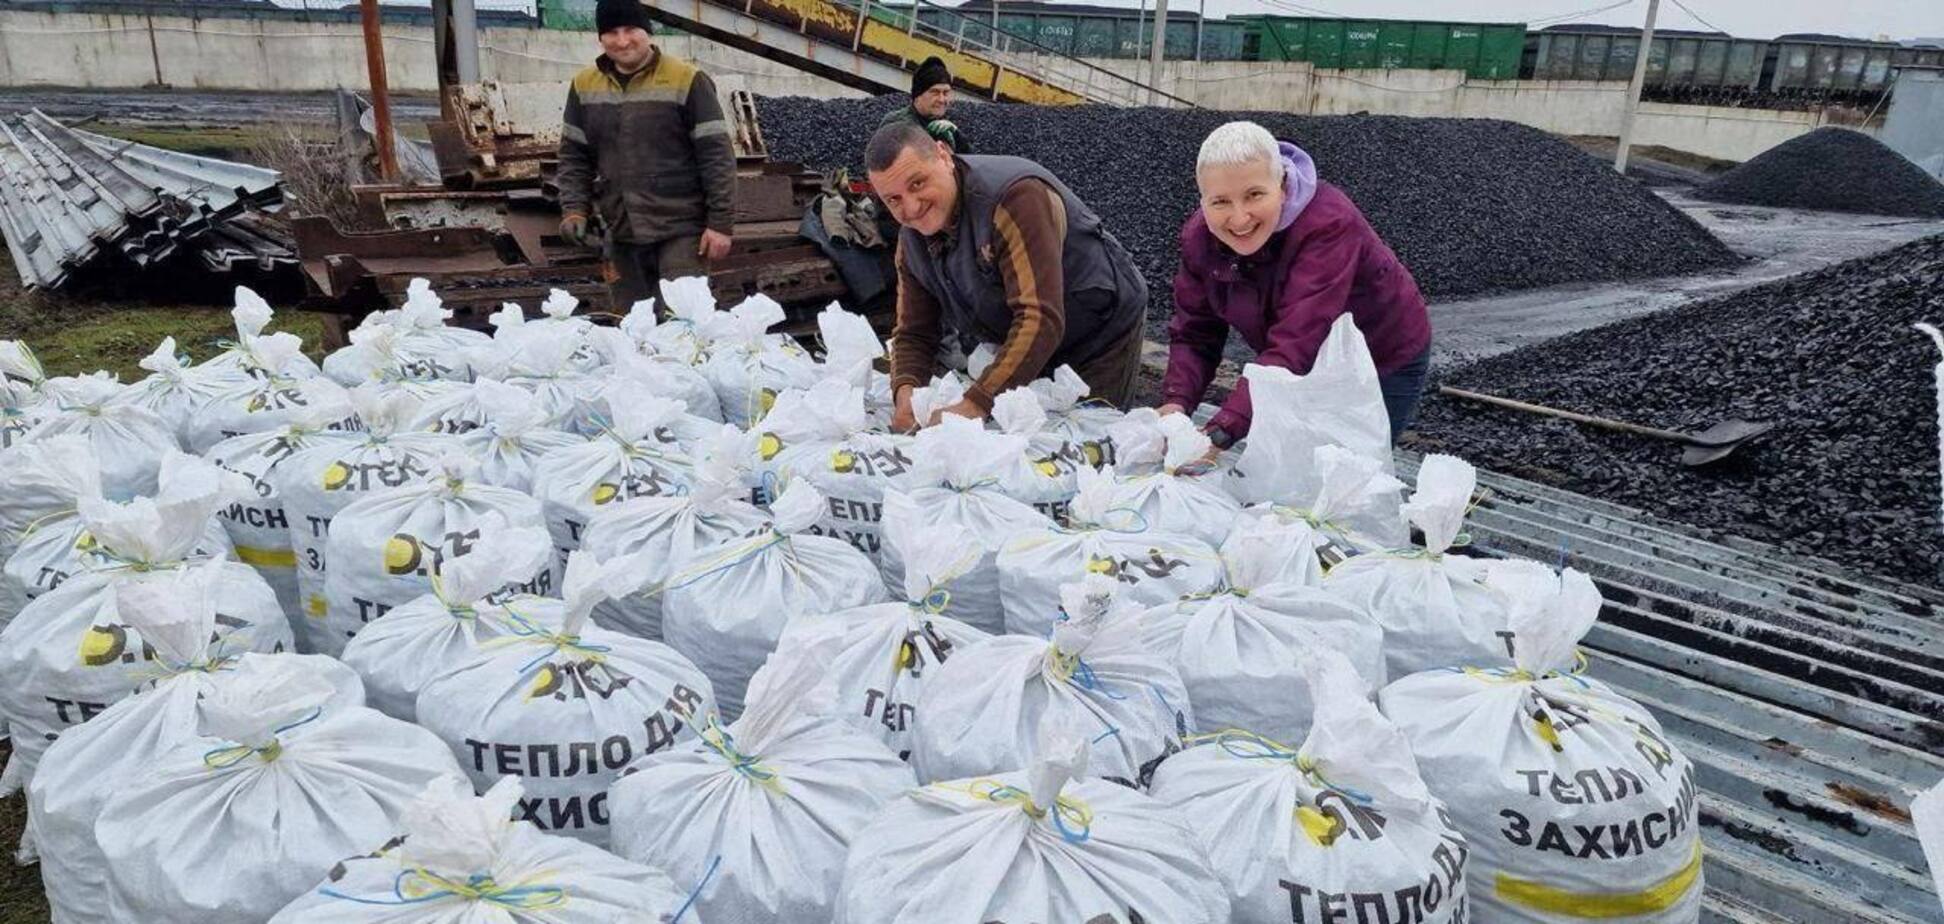 ДТЭК 'Энерго' передала очередную партию угля для обогрева защитников Украины